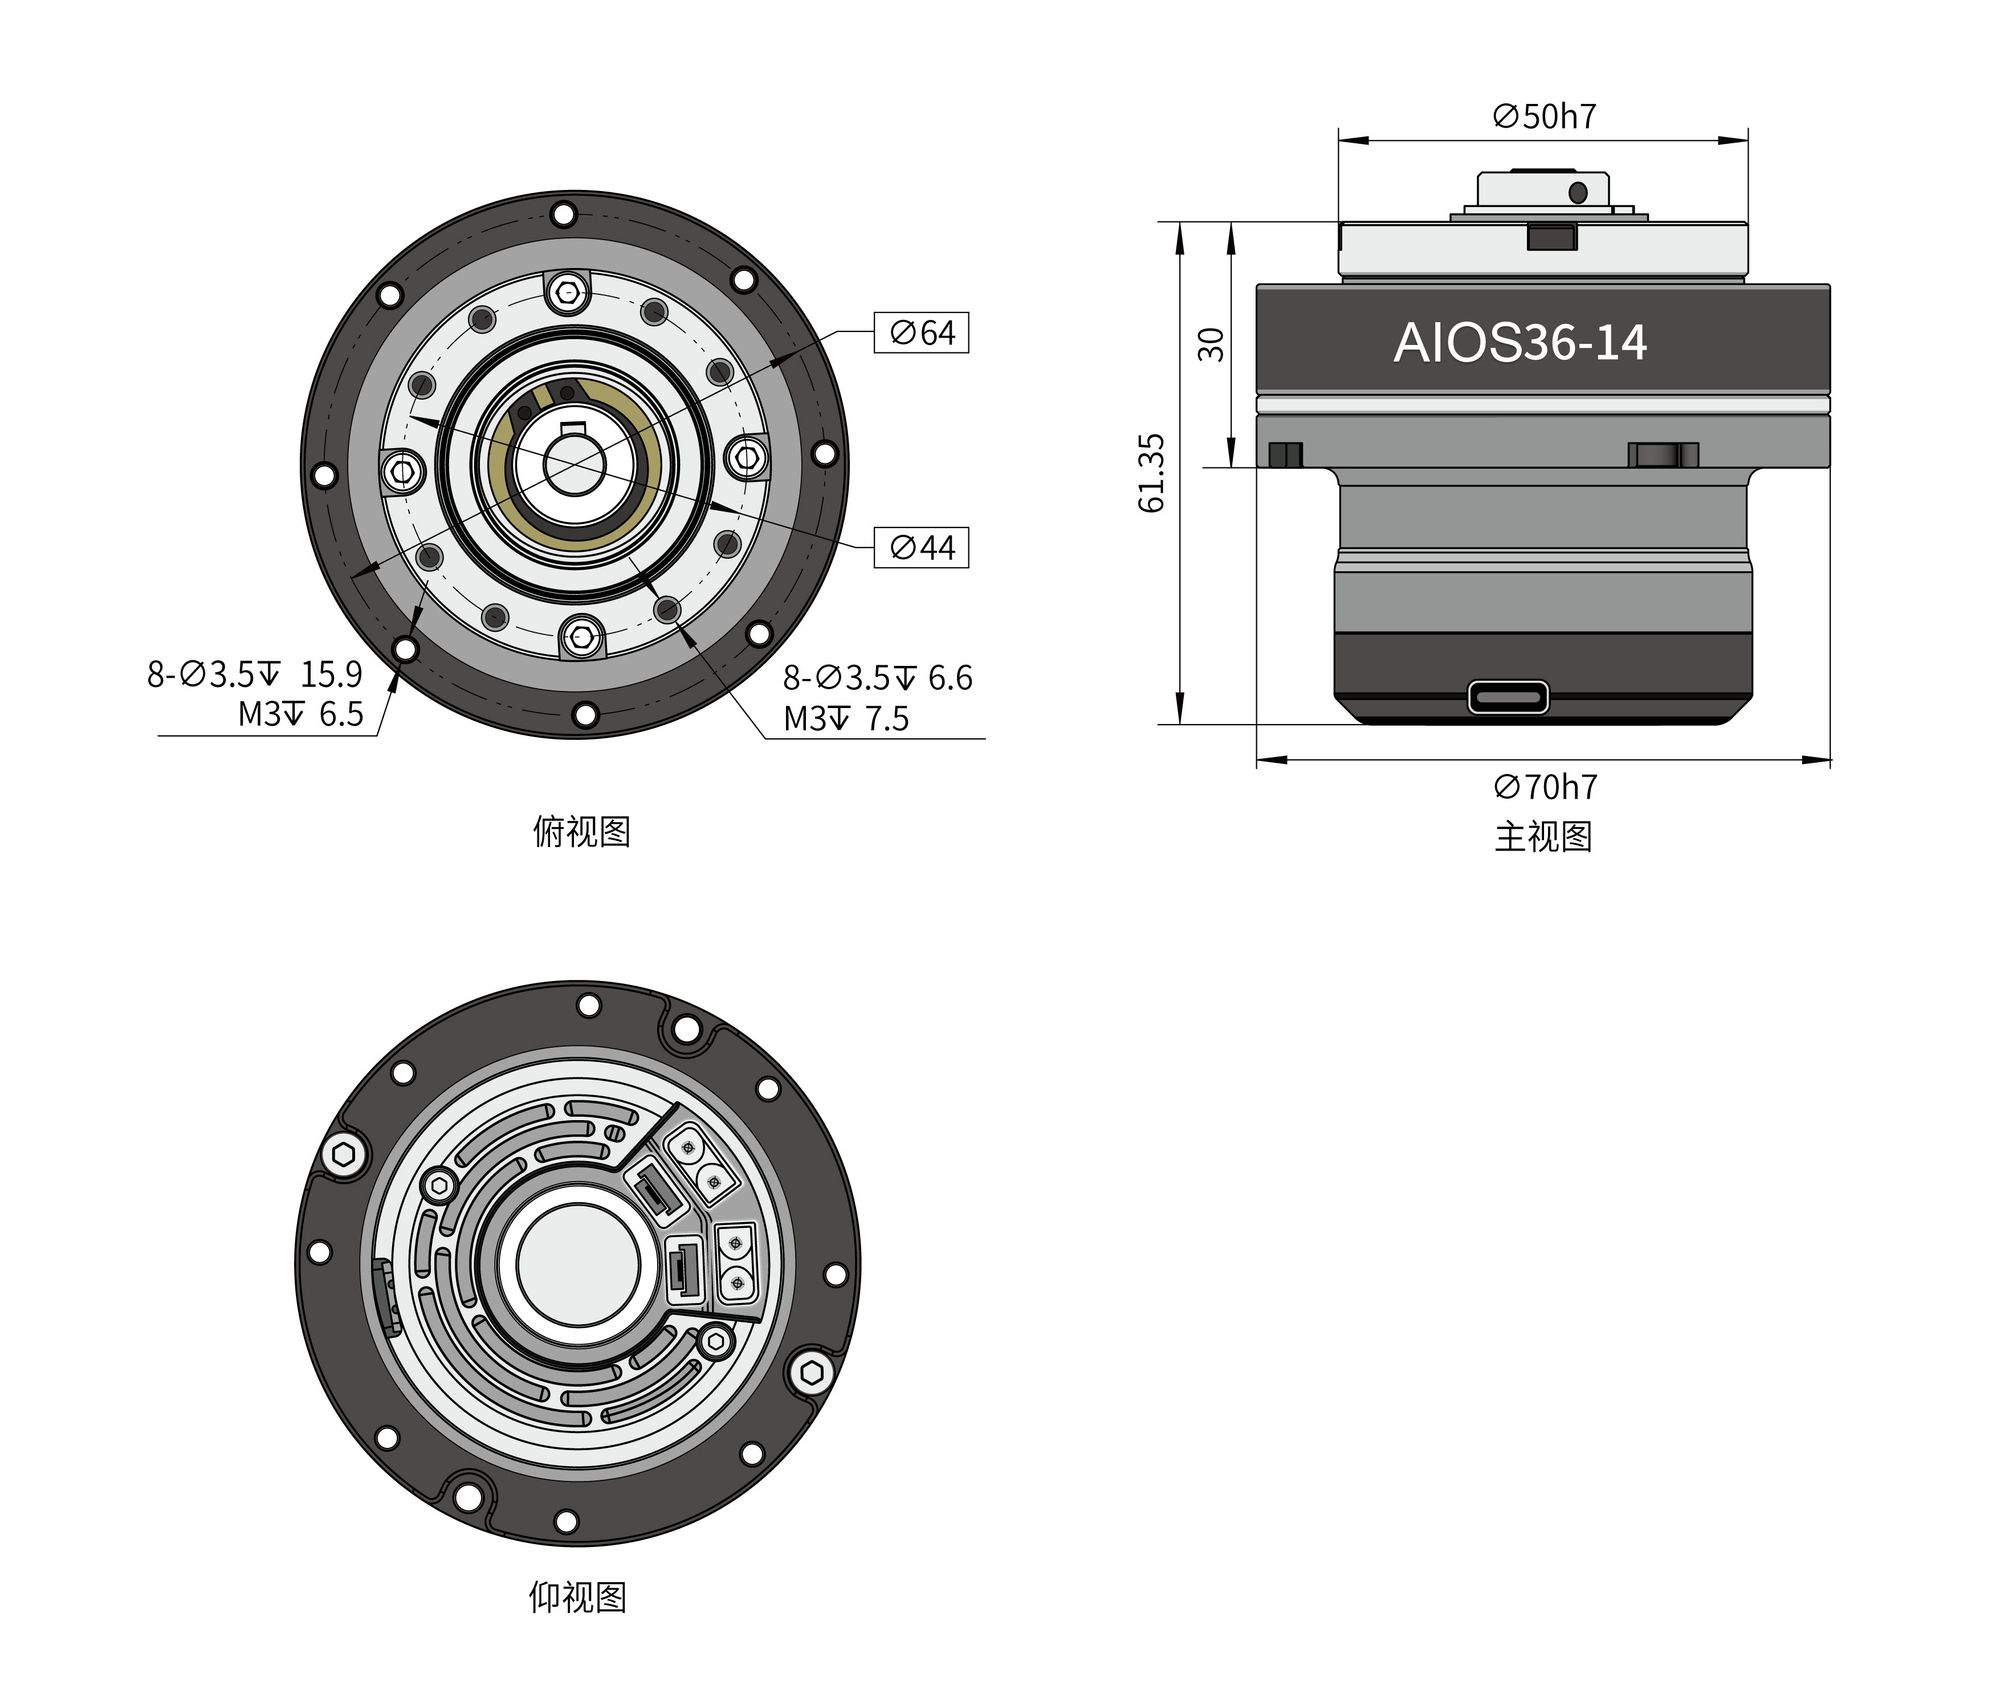 AIOS Series Precise Actuator - High Power & Torque Density